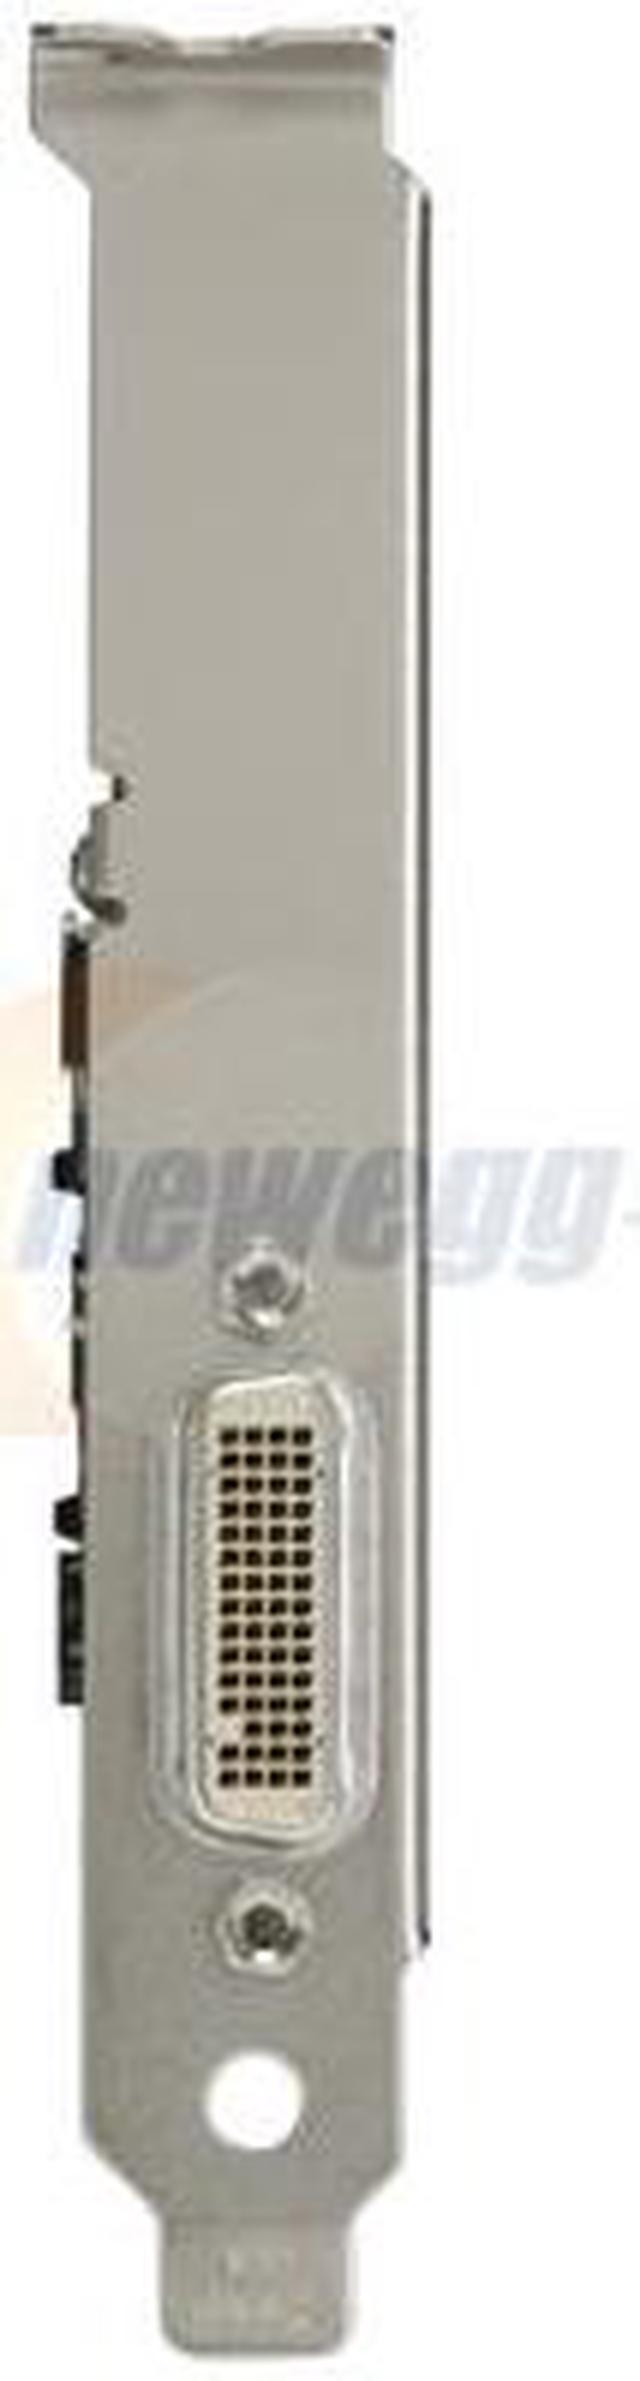 PNY Quadro NVS 290 VCQ290NVS-PCIEX1-PB 256MB 64-bit GDDR2 PCI Express x1  Low Profile Workstation Video Card